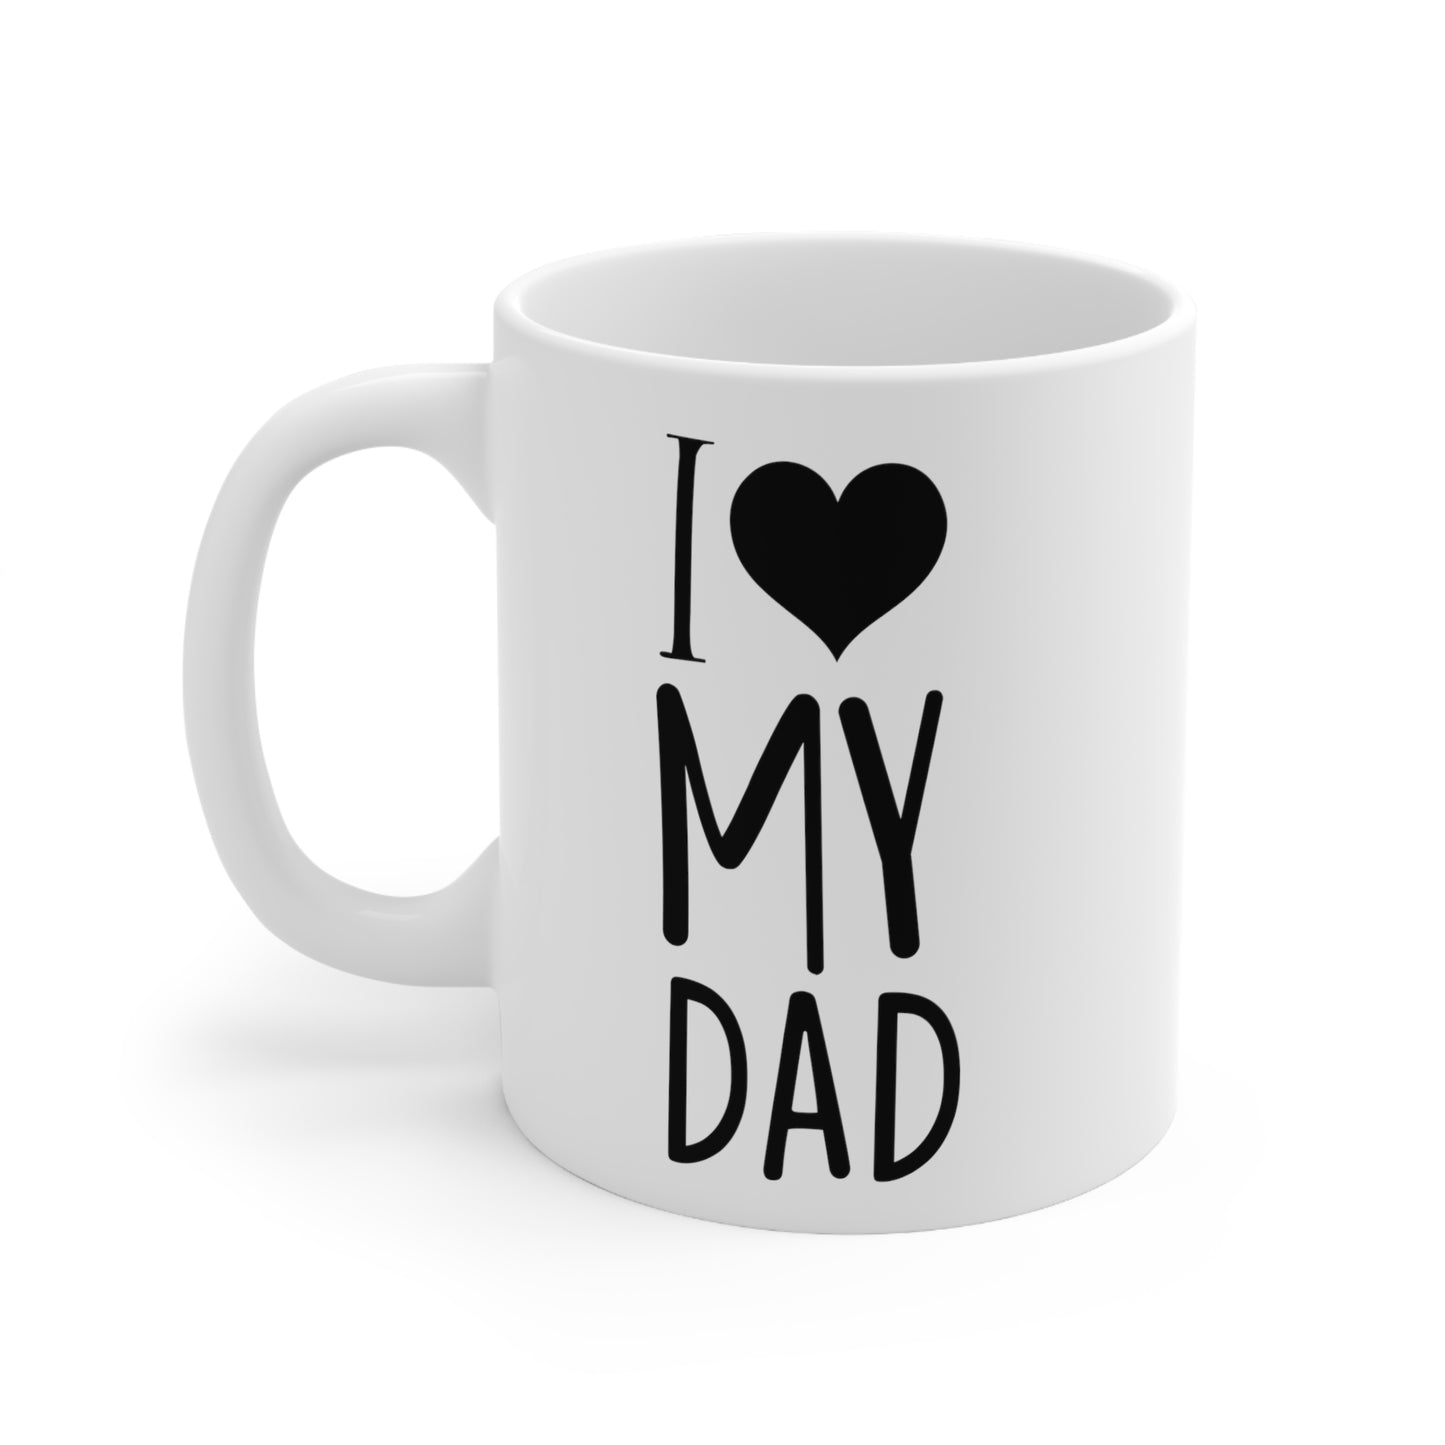 I Love My Dad Ceramic Mug 11oz